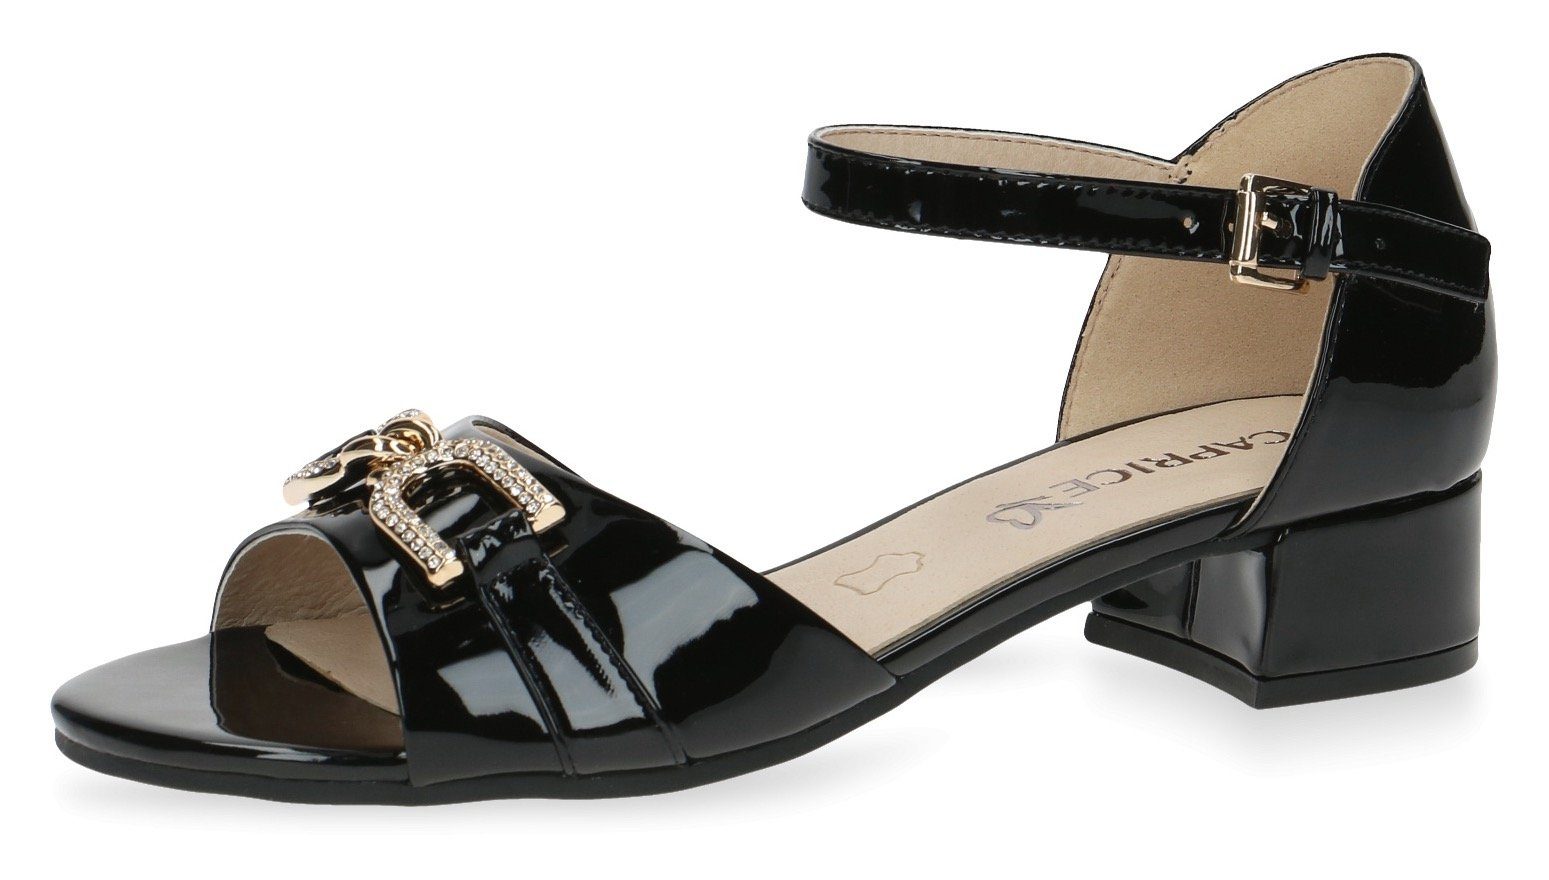 Caprice Sandalette mit schönem Schmuckelement schwarz-glänzend